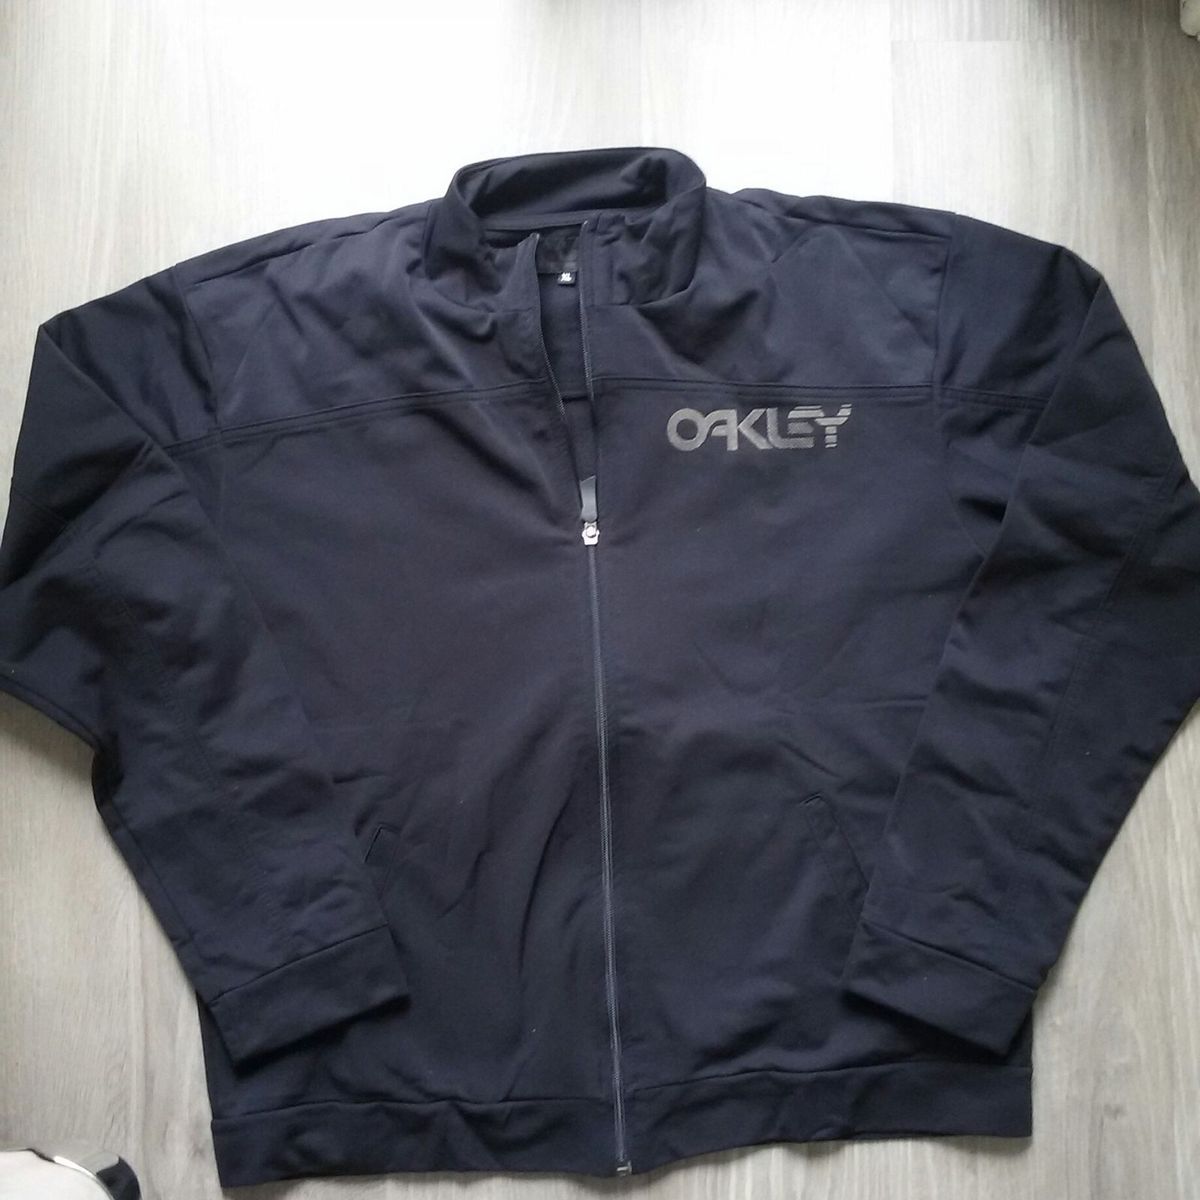 blusa de frio oakley masculina